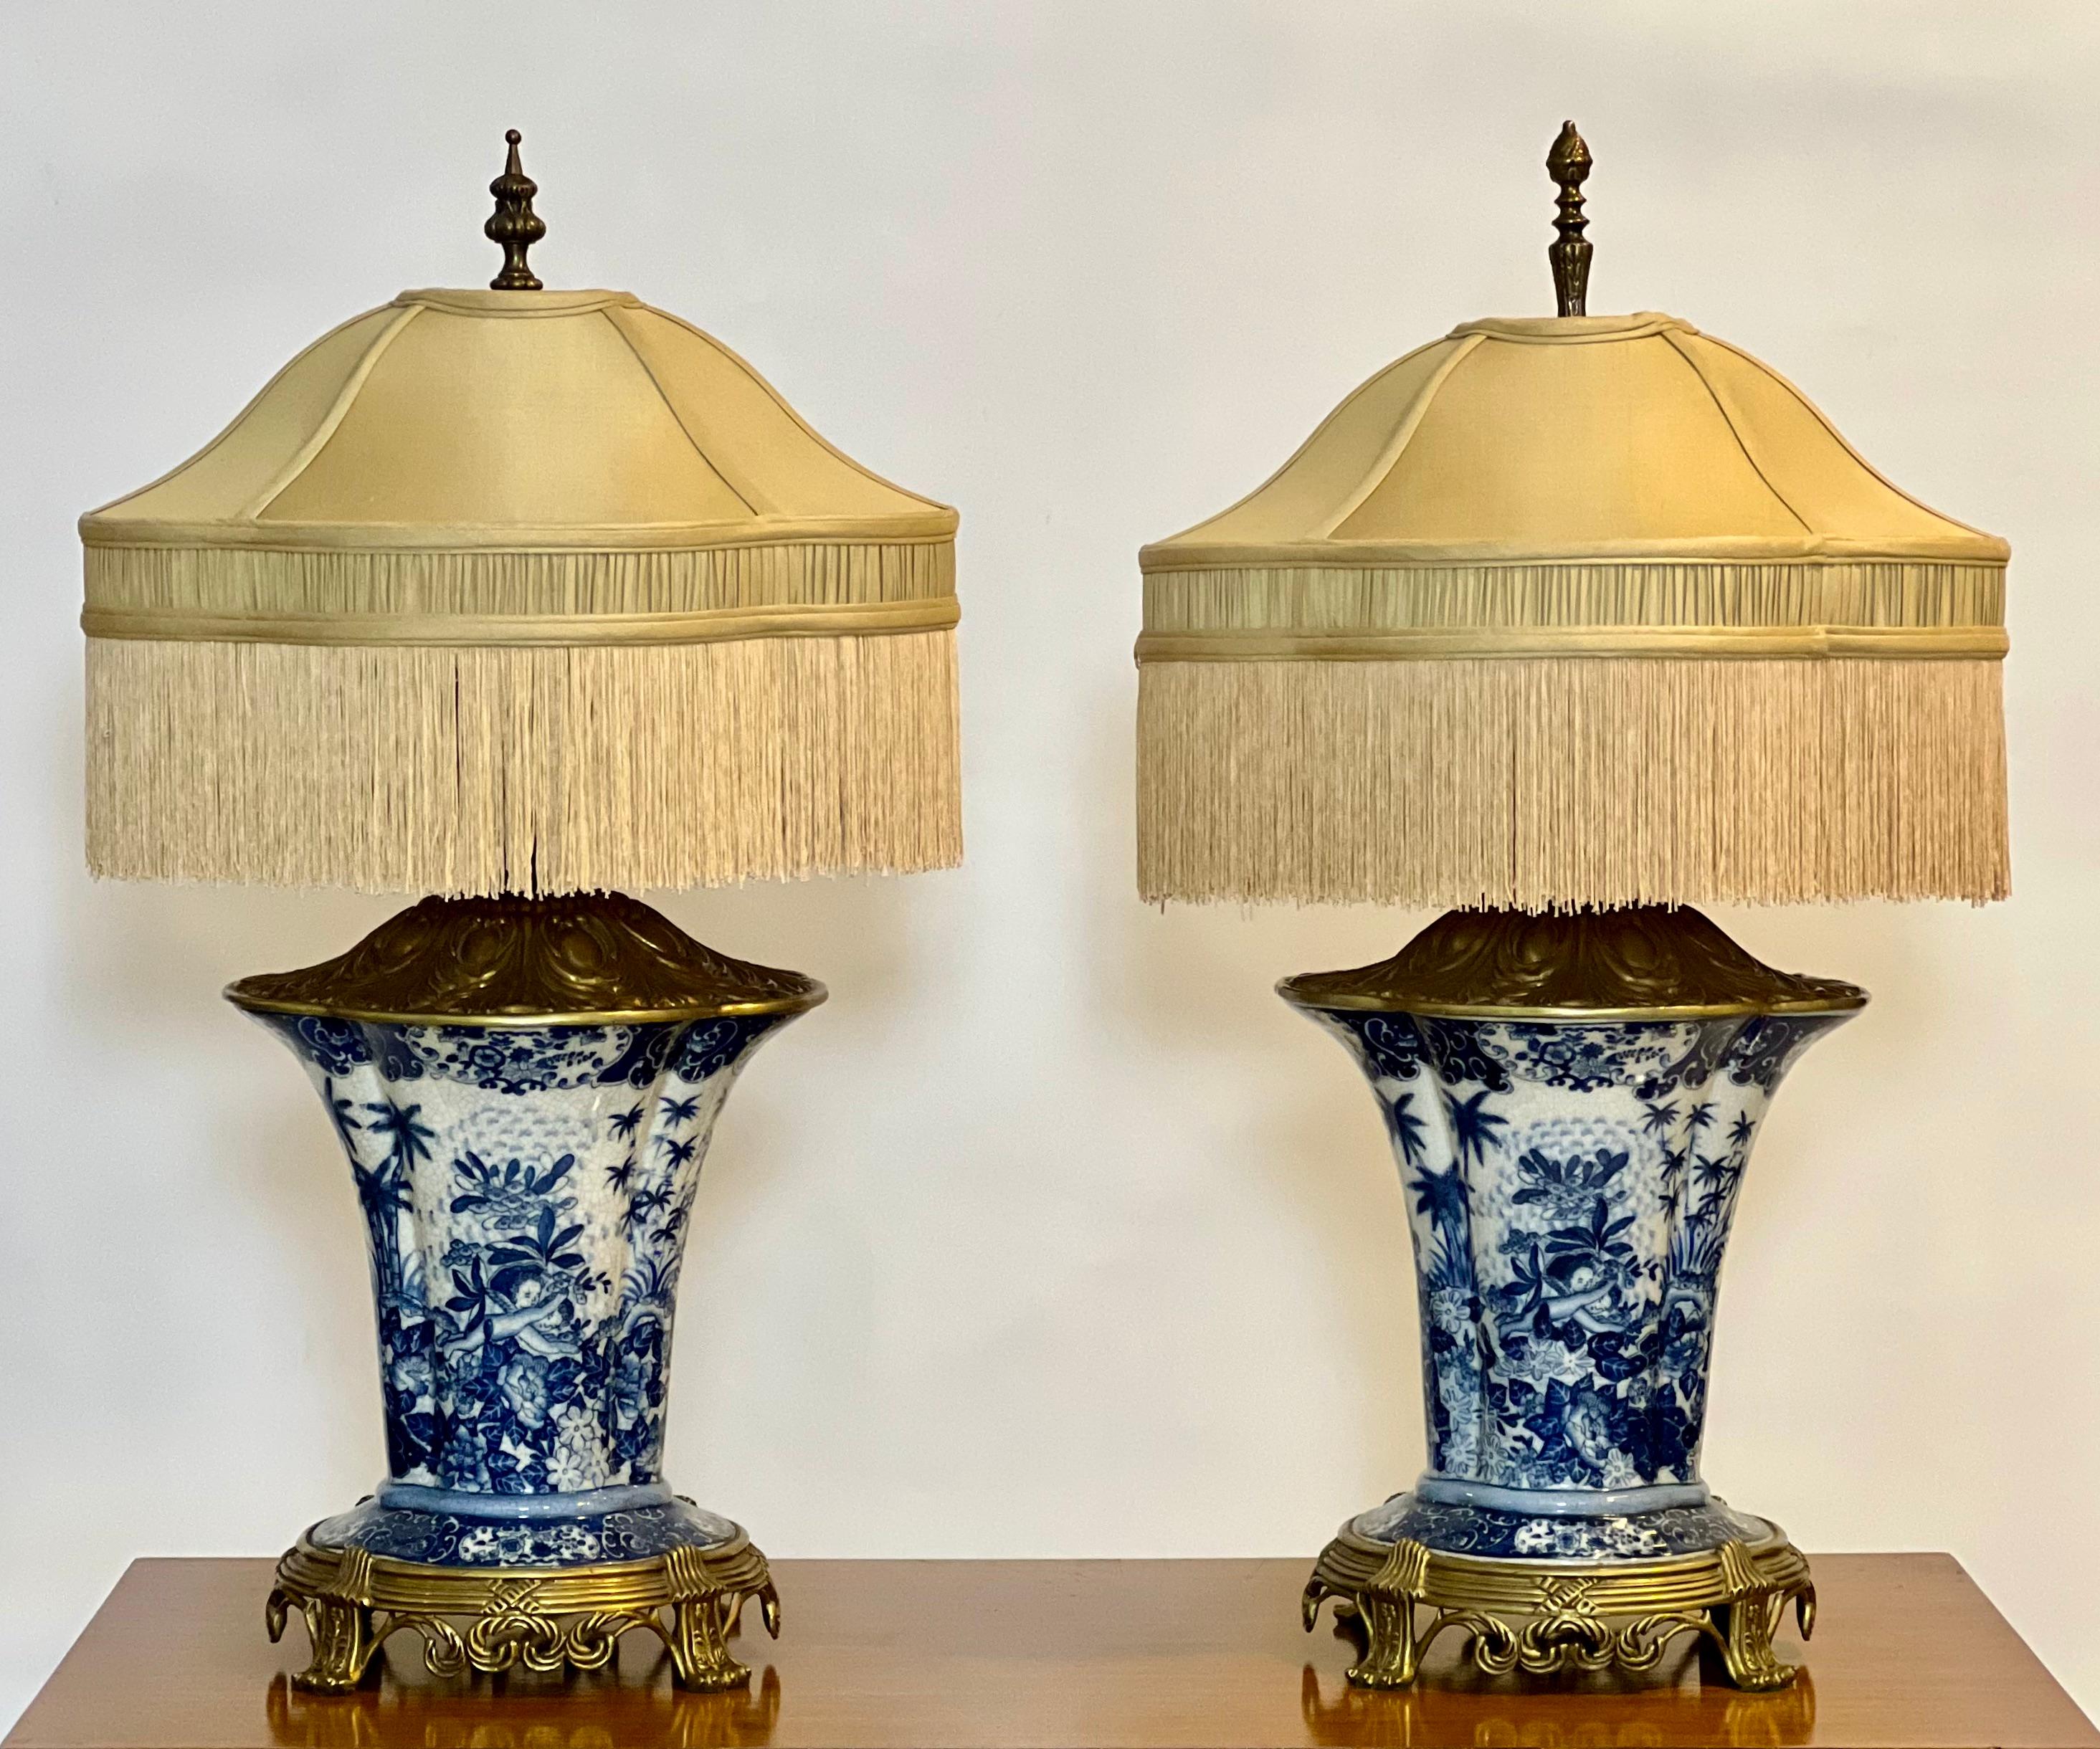 Paar Lampen aus Ormolu und Craquelé-Porzellan des späten 20. Jahrhunderts von United Wilson Porcelain, signiert.

Wunderschöne blau-weiße Lampen in Vasenform mit verzierten Ormolu-Beschlägen. Als Teil der Ormolu-Serie von United Wilson, die von